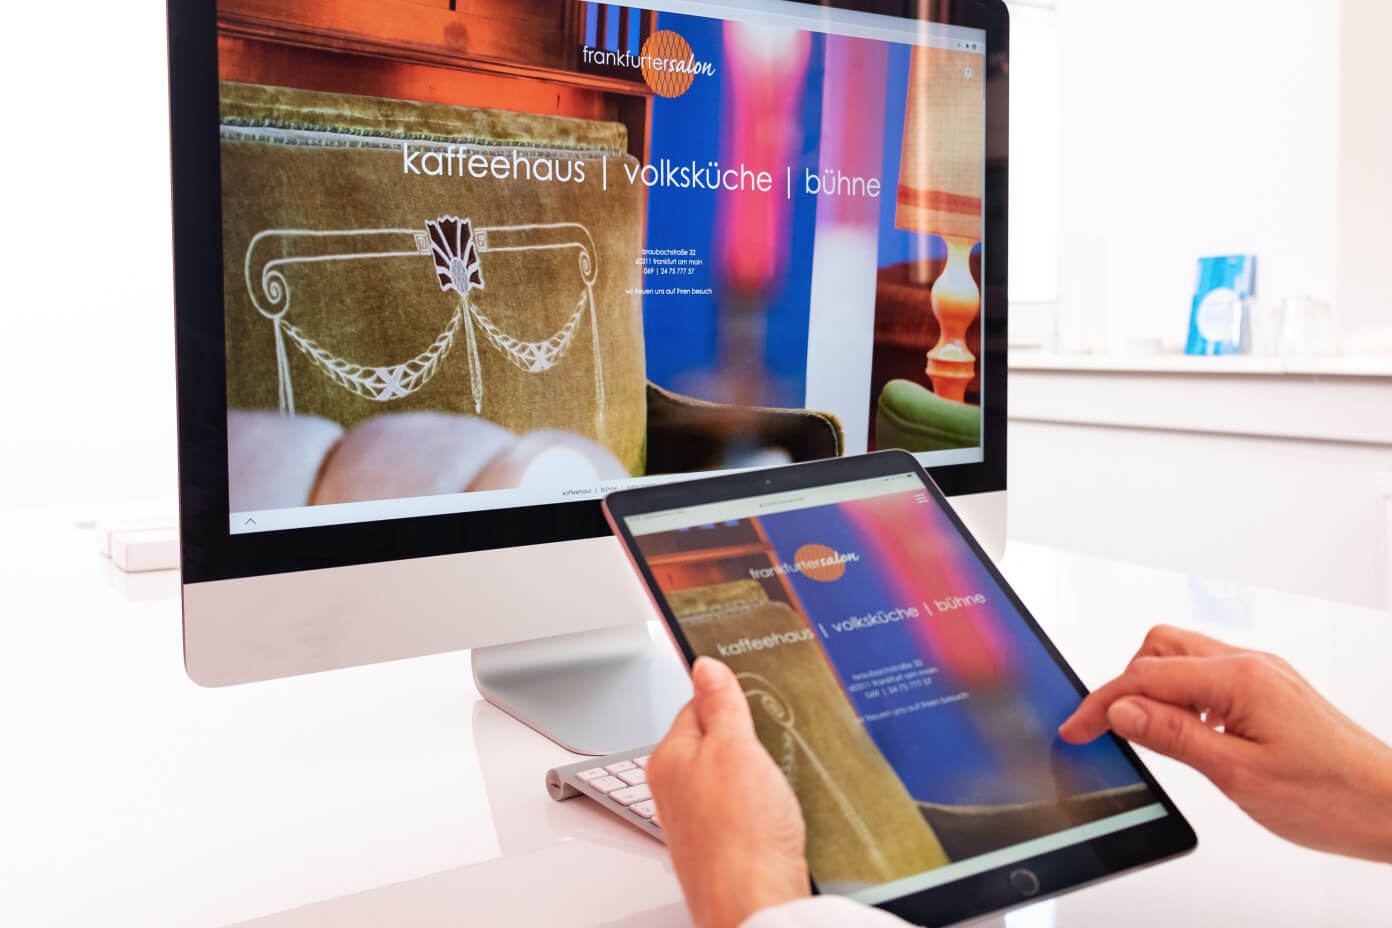 frankfurter salon website Bildschirm + Tablet